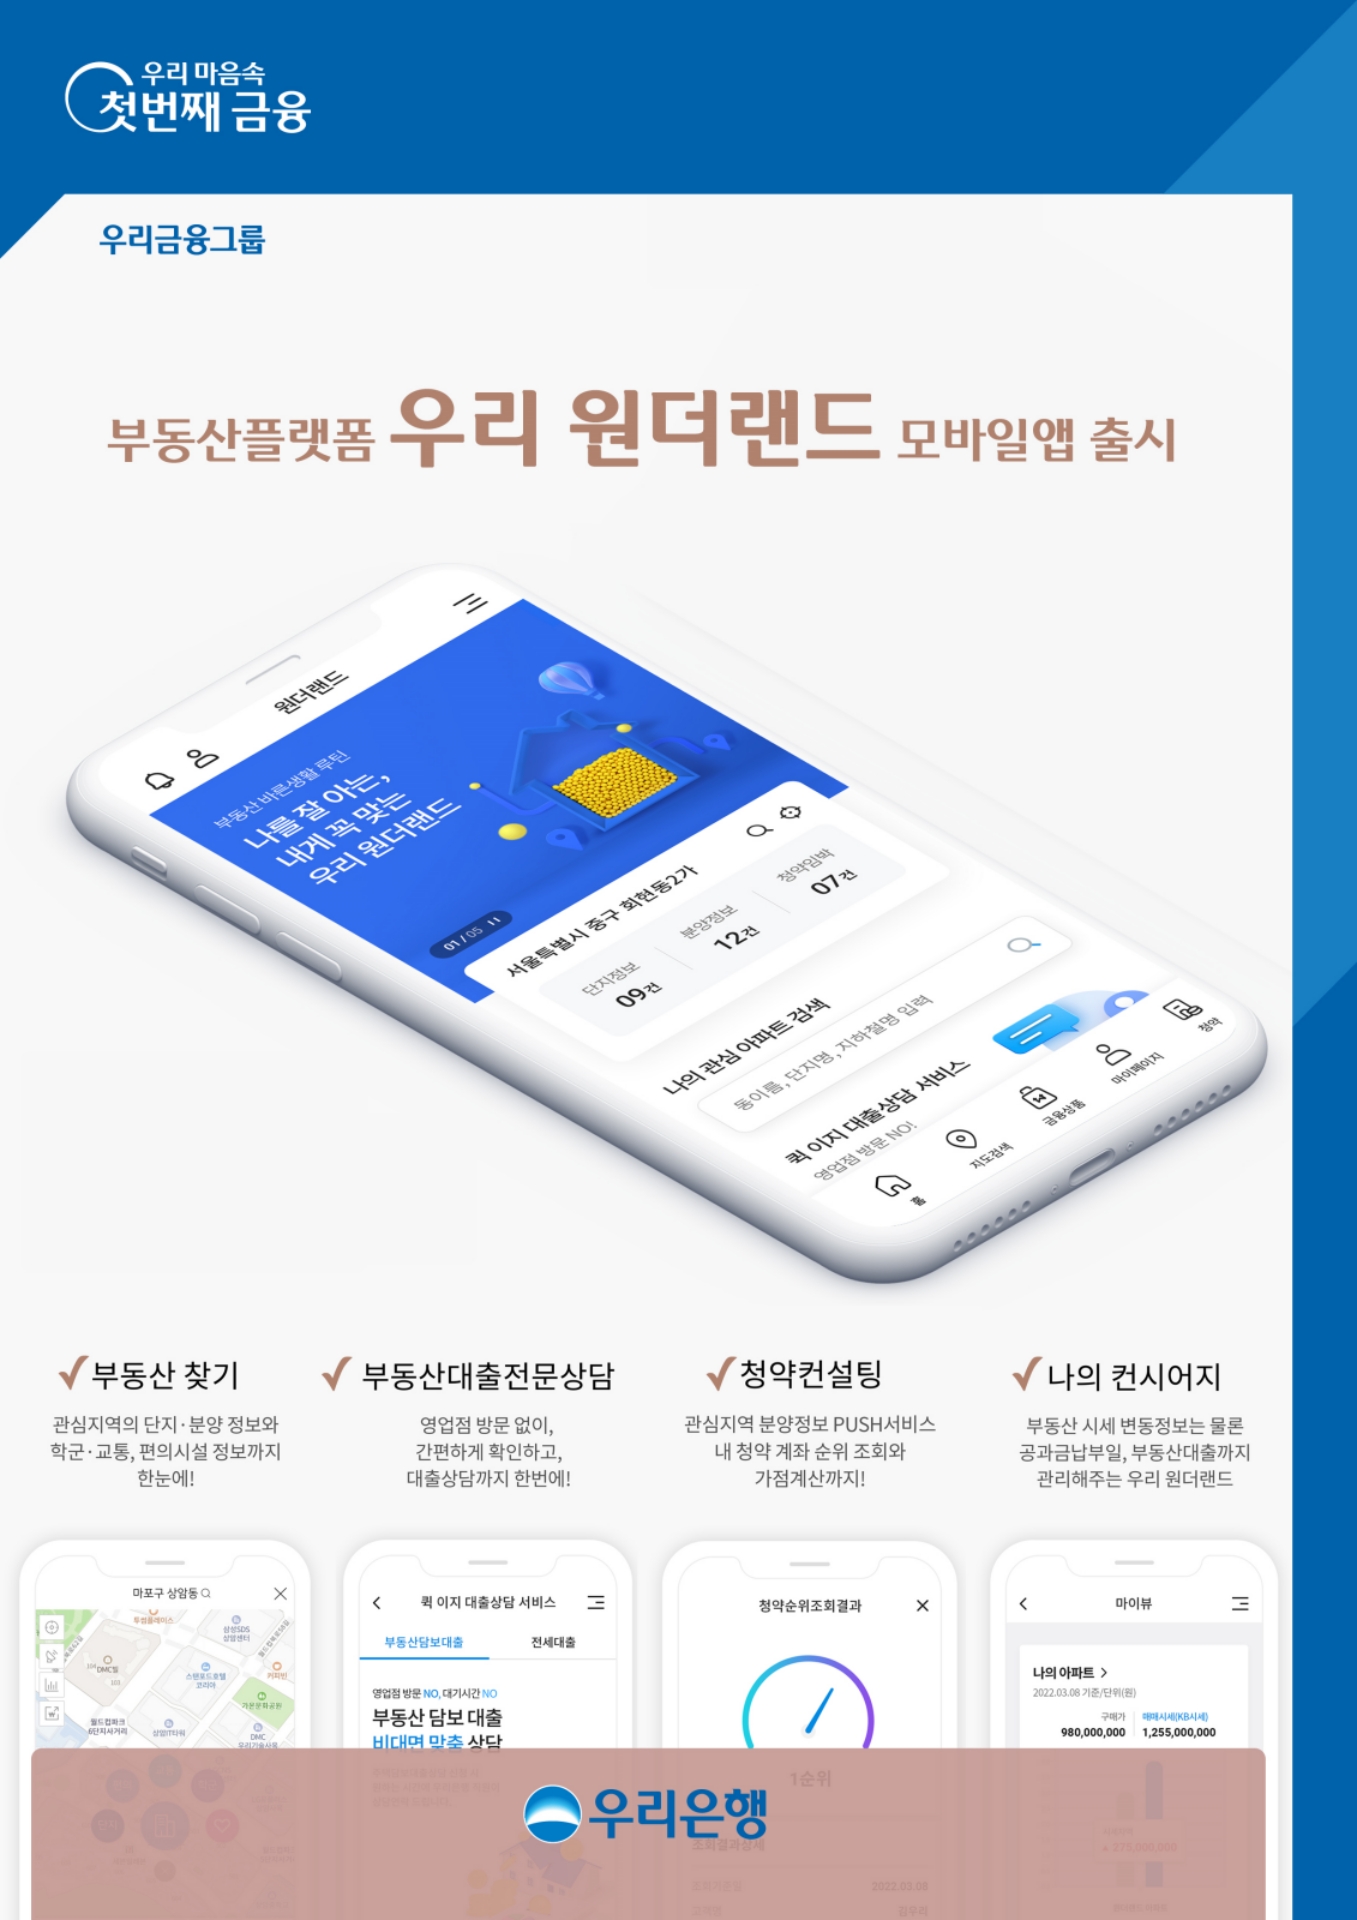 우리은행, 부동산플랫폼 ‘우리원더랜드’ 모바일 앱 출시